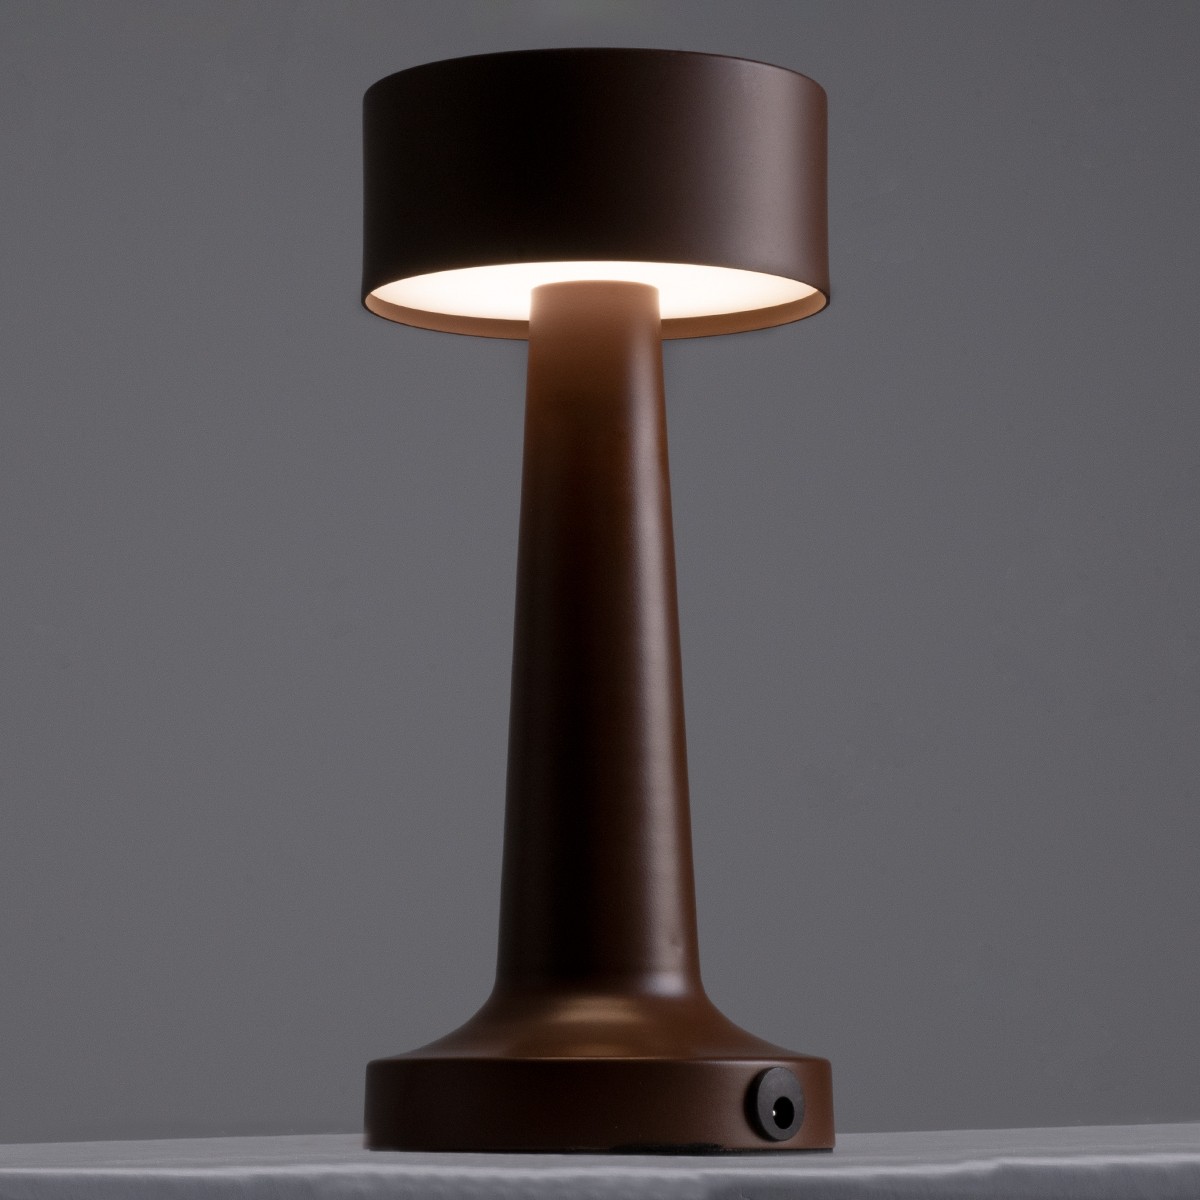 LED Επιτραπέζιο Φωτιστικό Σκούρο Καφέ 1.5W BELLA Επαναφορτιζόμενο με Μπαταρία και Διακόπτη Αφής Dimmable - Φ9 x 21cm